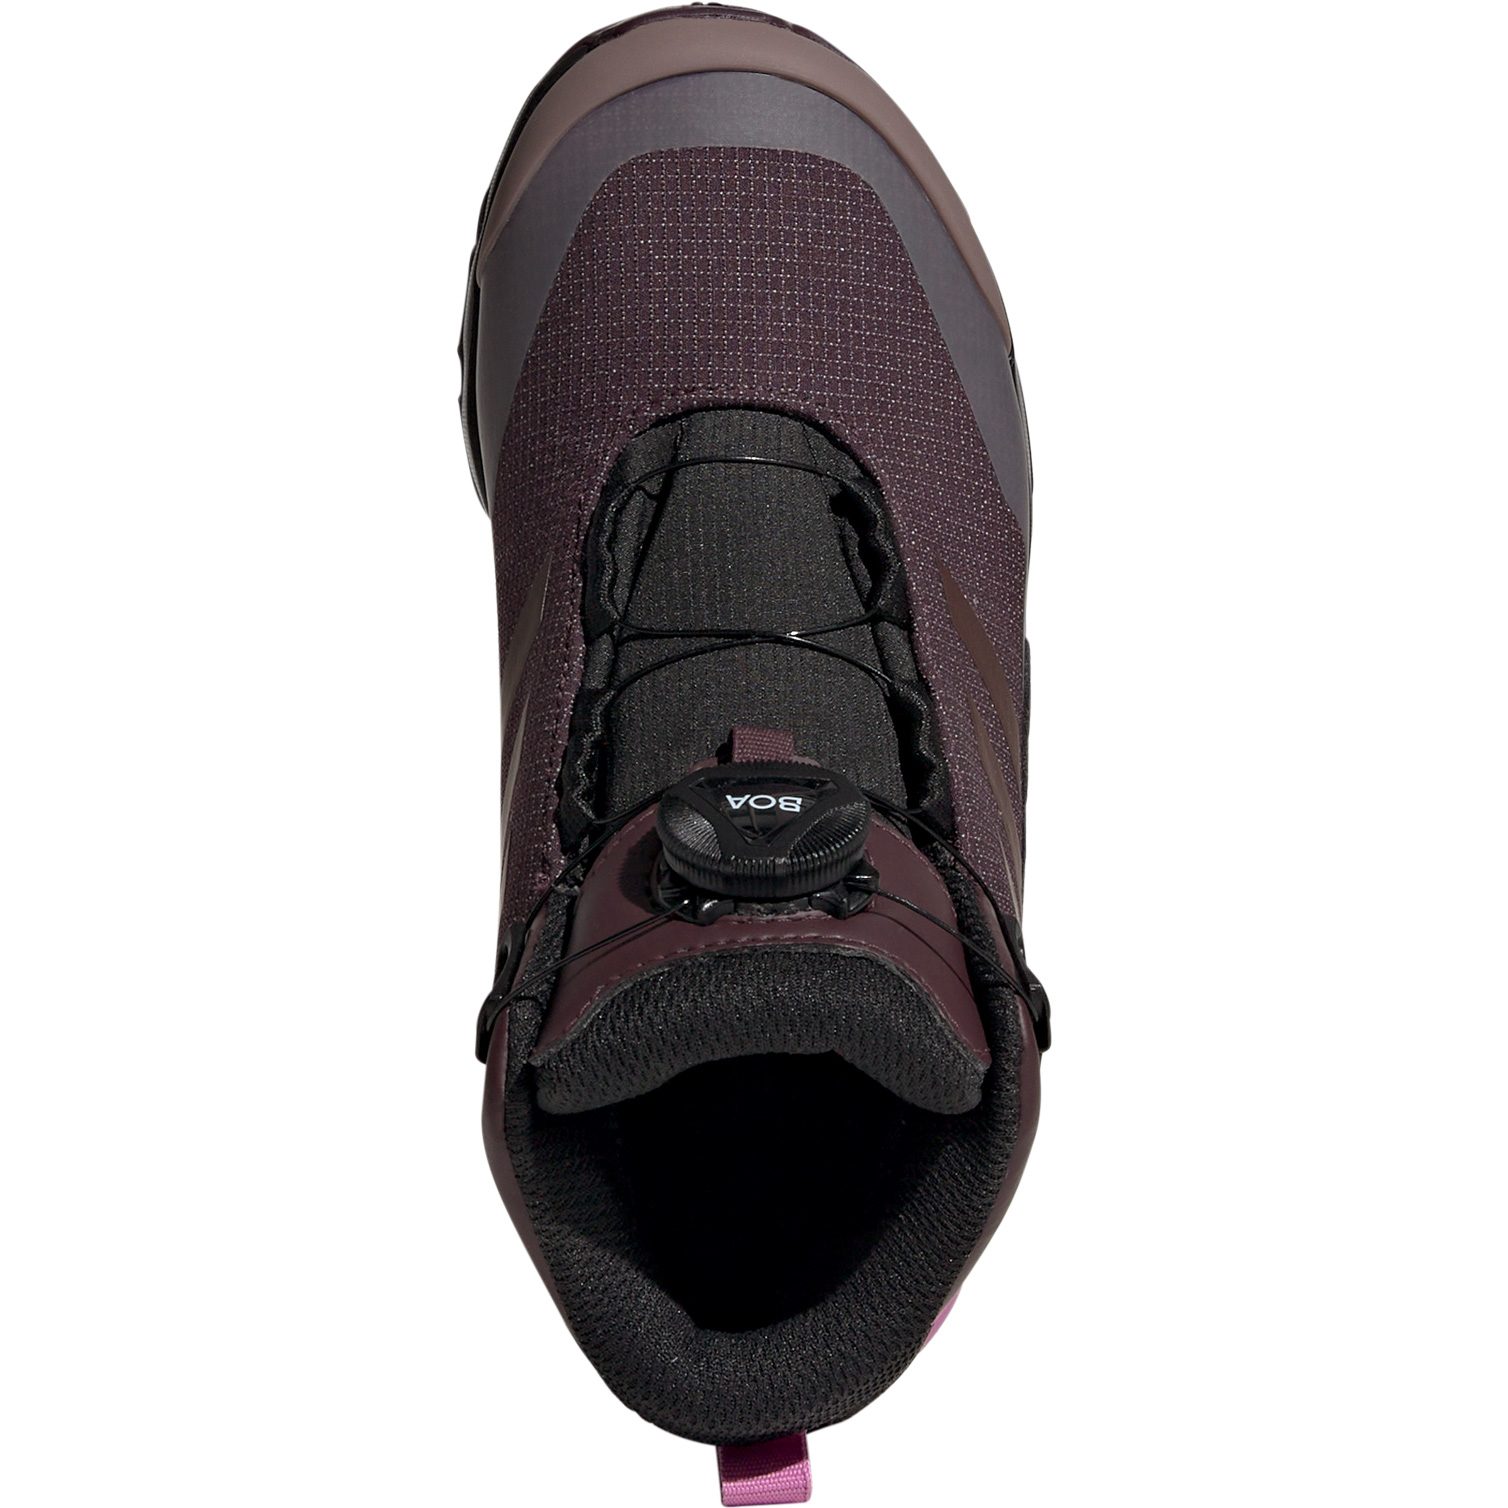 TERREX Boa Shop Sport - maroon Shoes Hiking Kids Bittl Terrex Rain.RDY at Mid adidas shadow